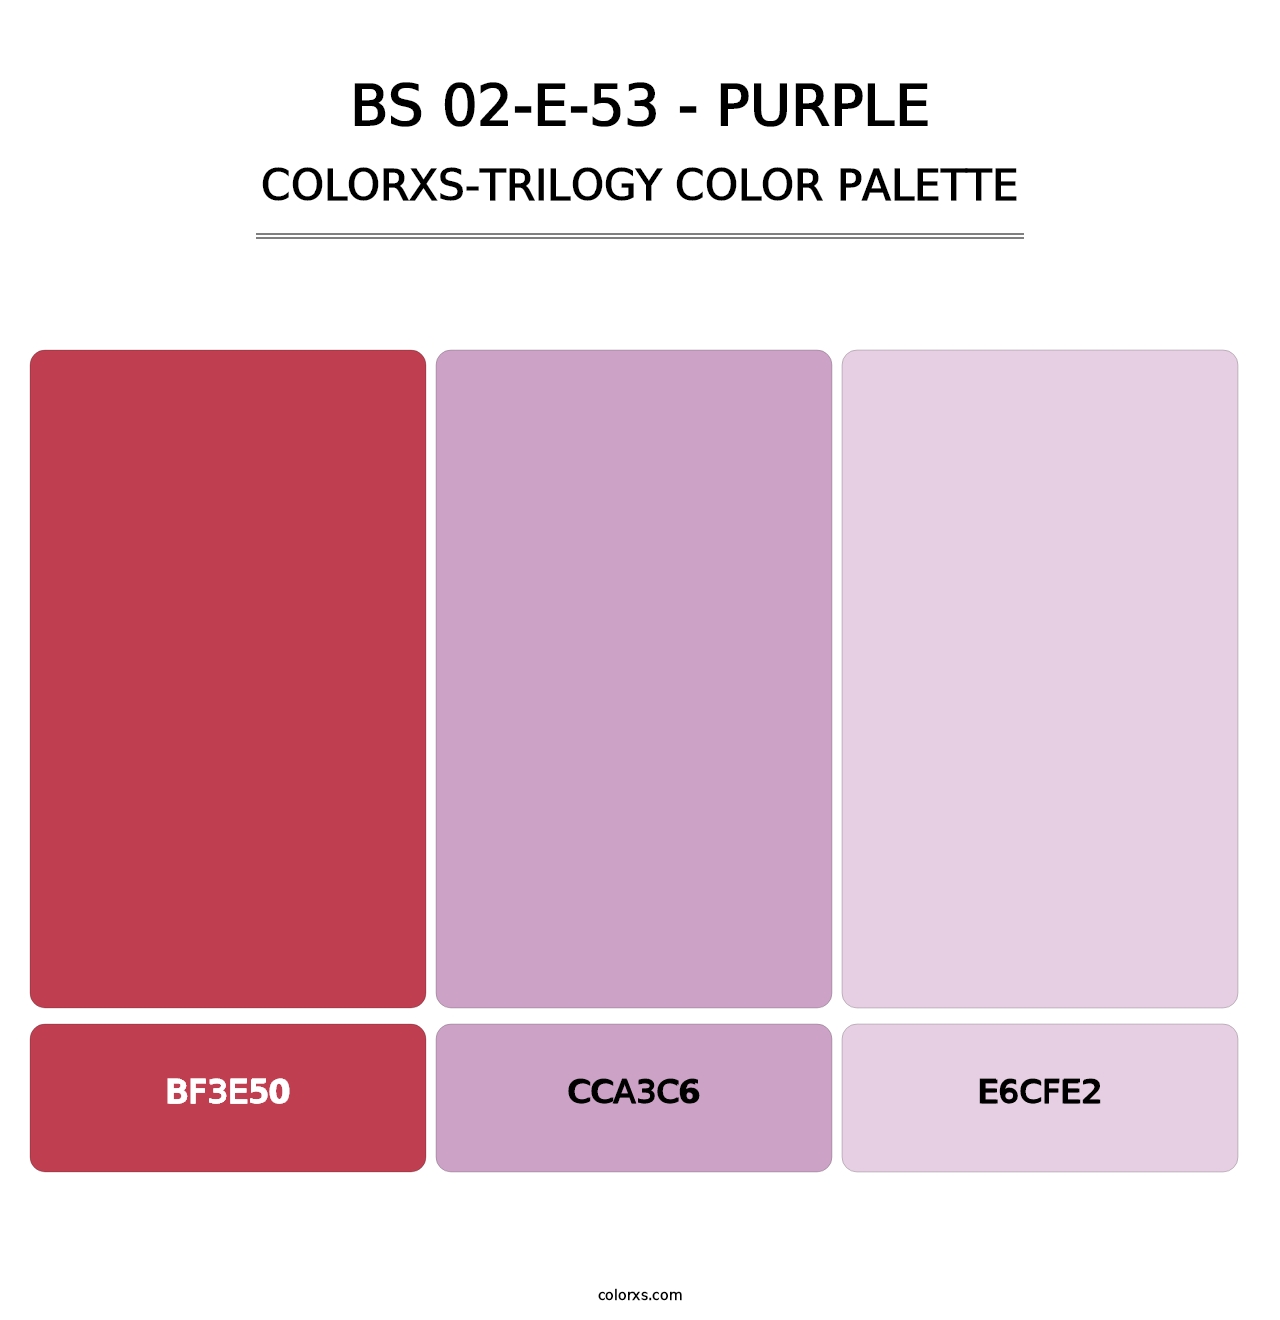 BS 02-E-53 - Purple - Colorxs Trilogy Palette